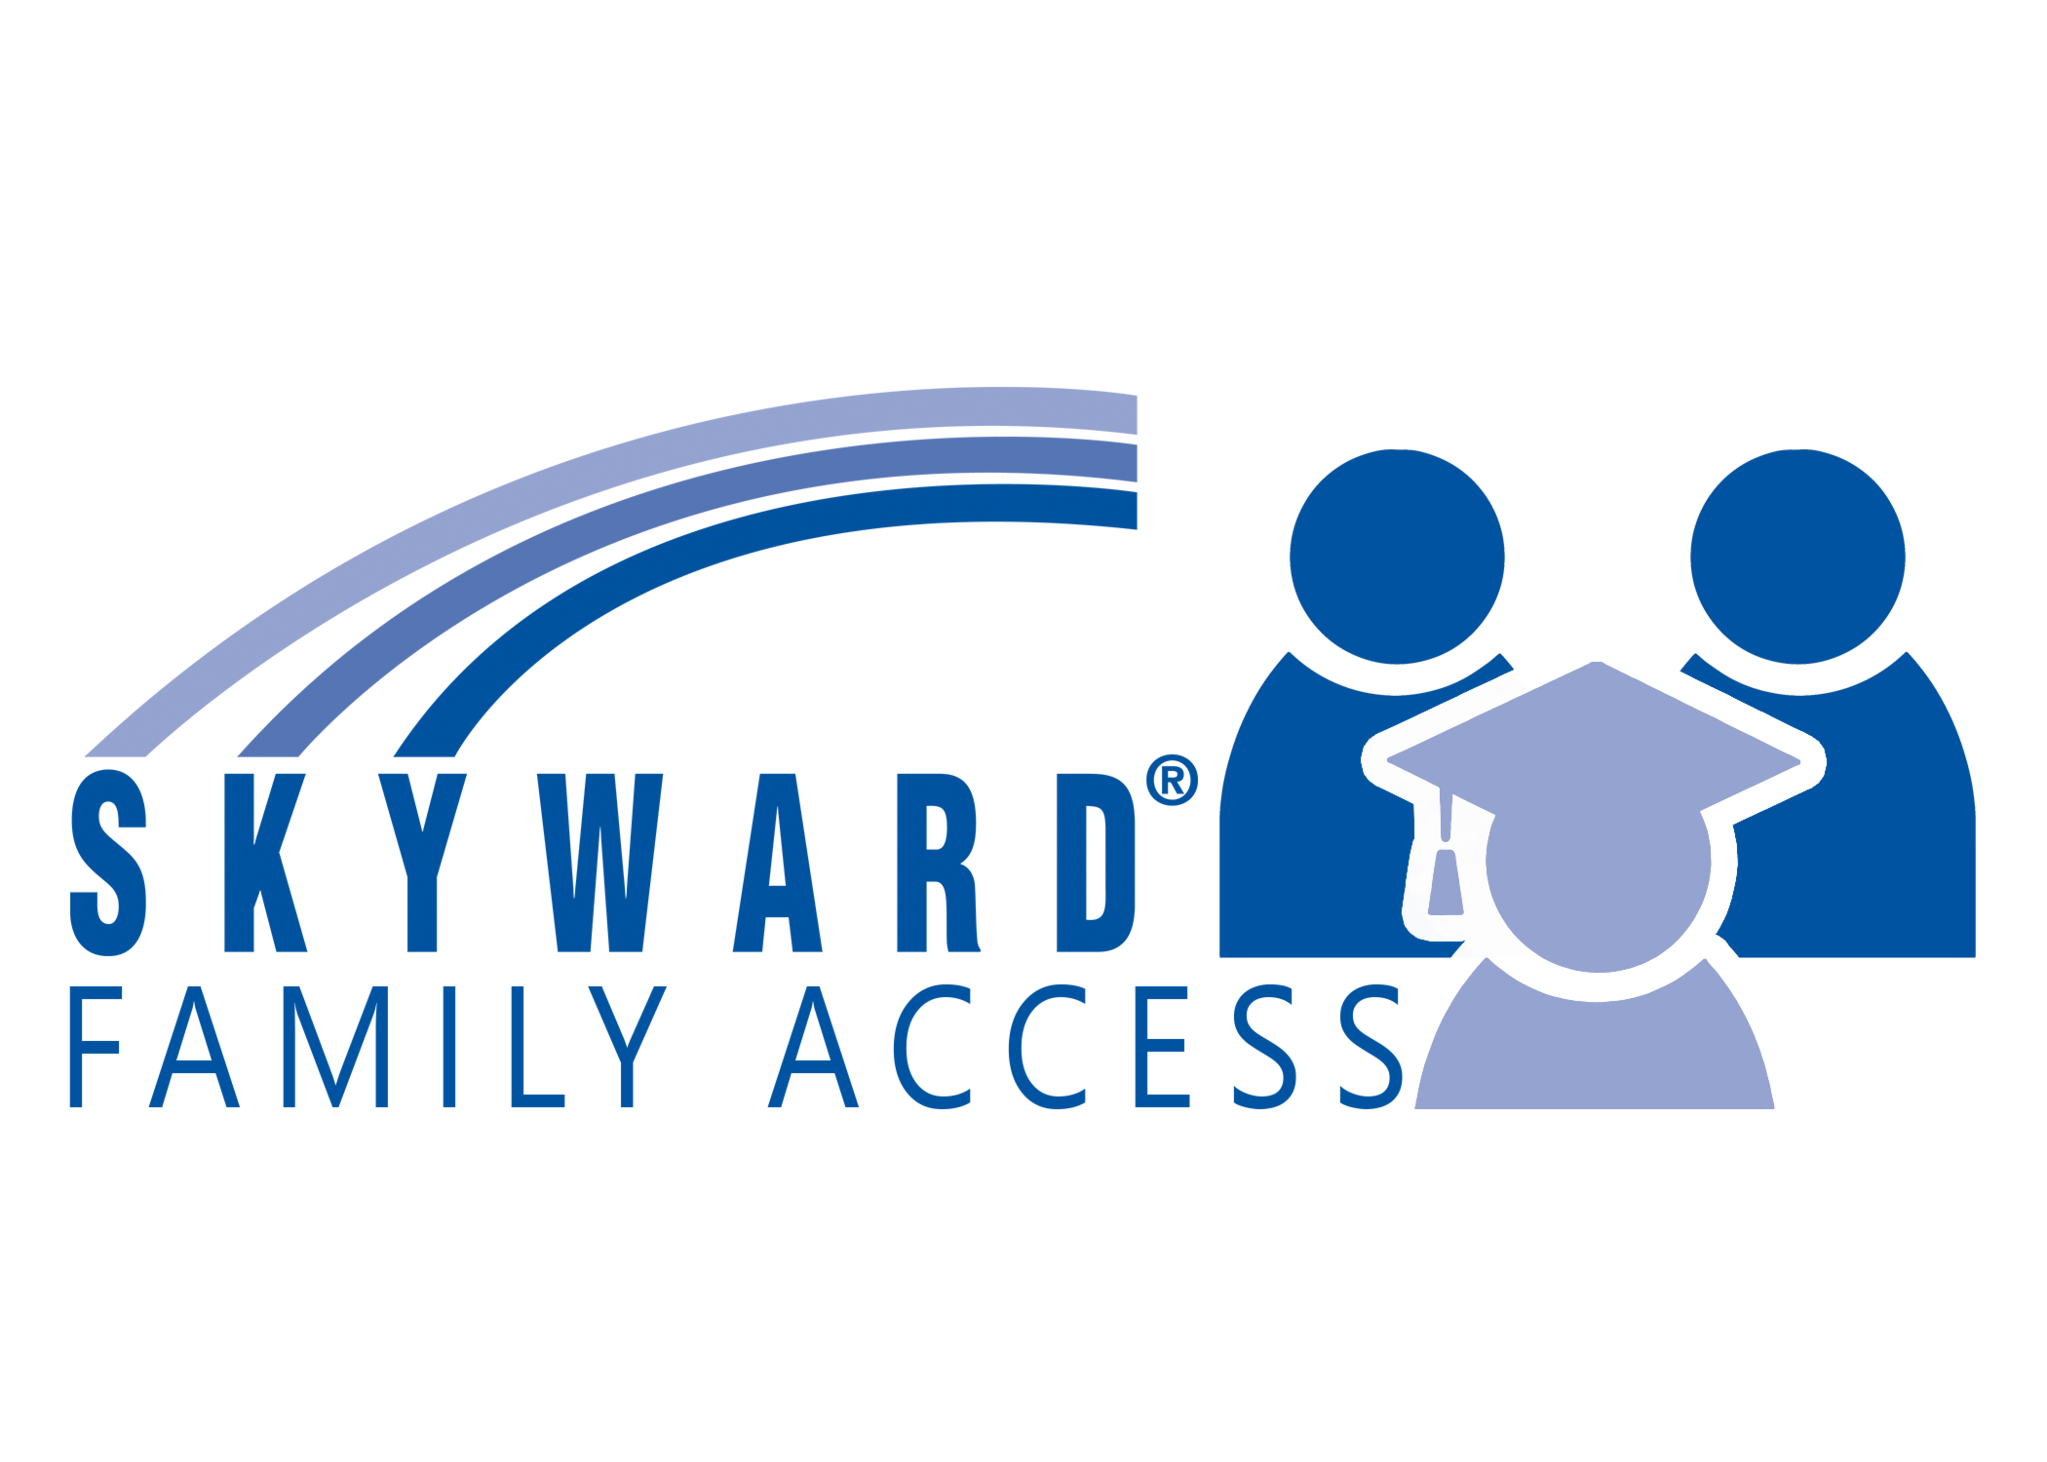 Skyward logo and link